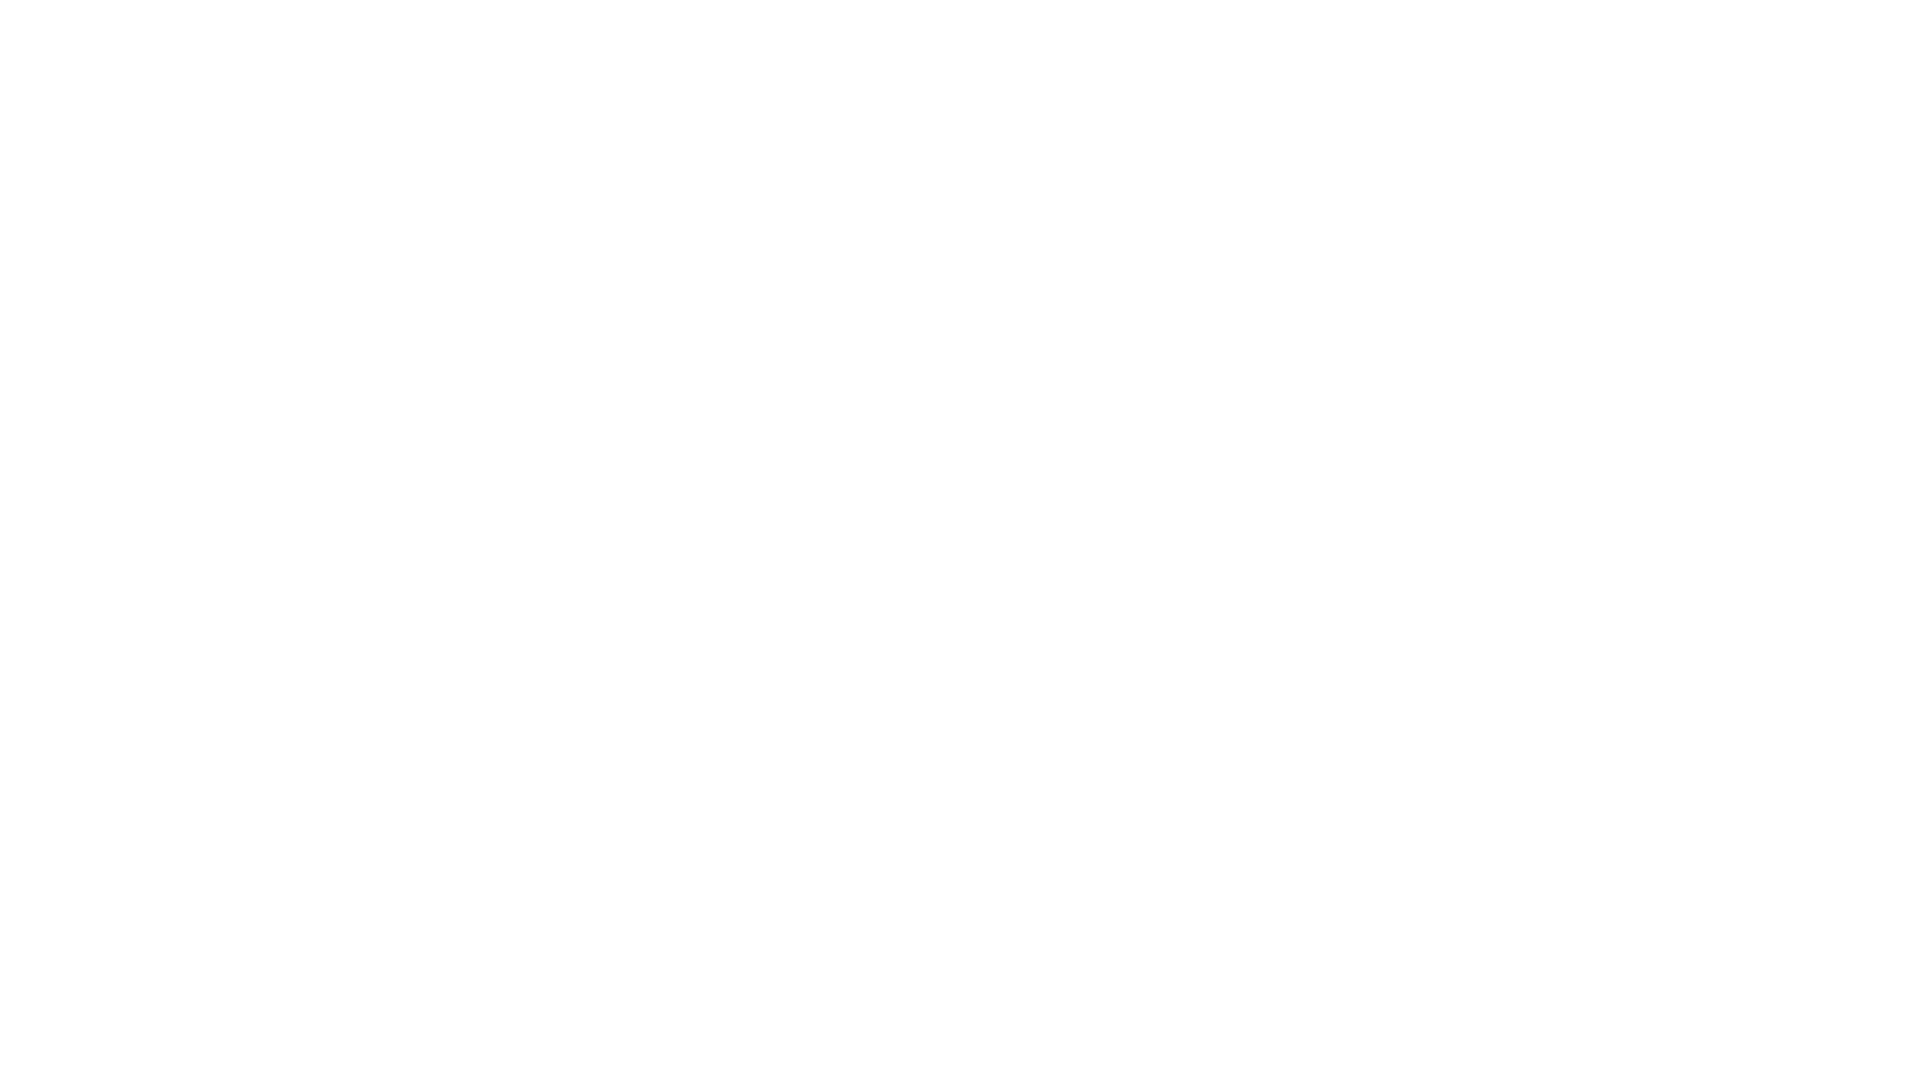 About Billions